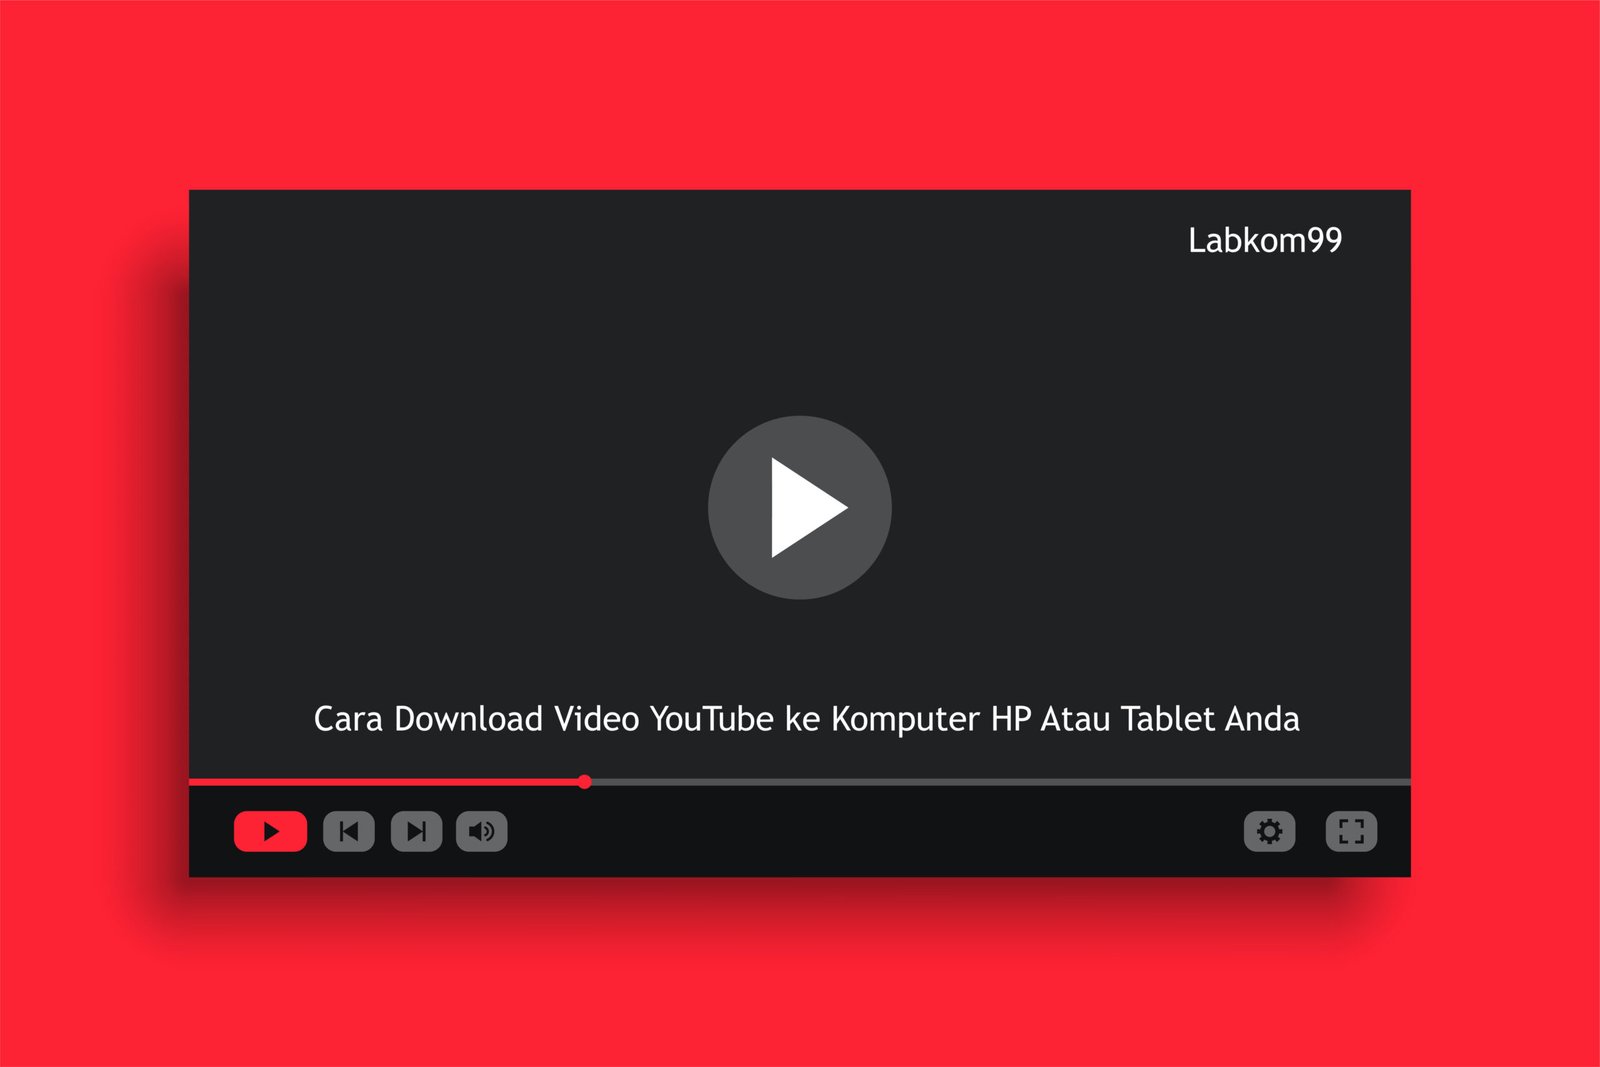 Cara Download Video YouTube ke Komputer HP Atau Tablet Anda